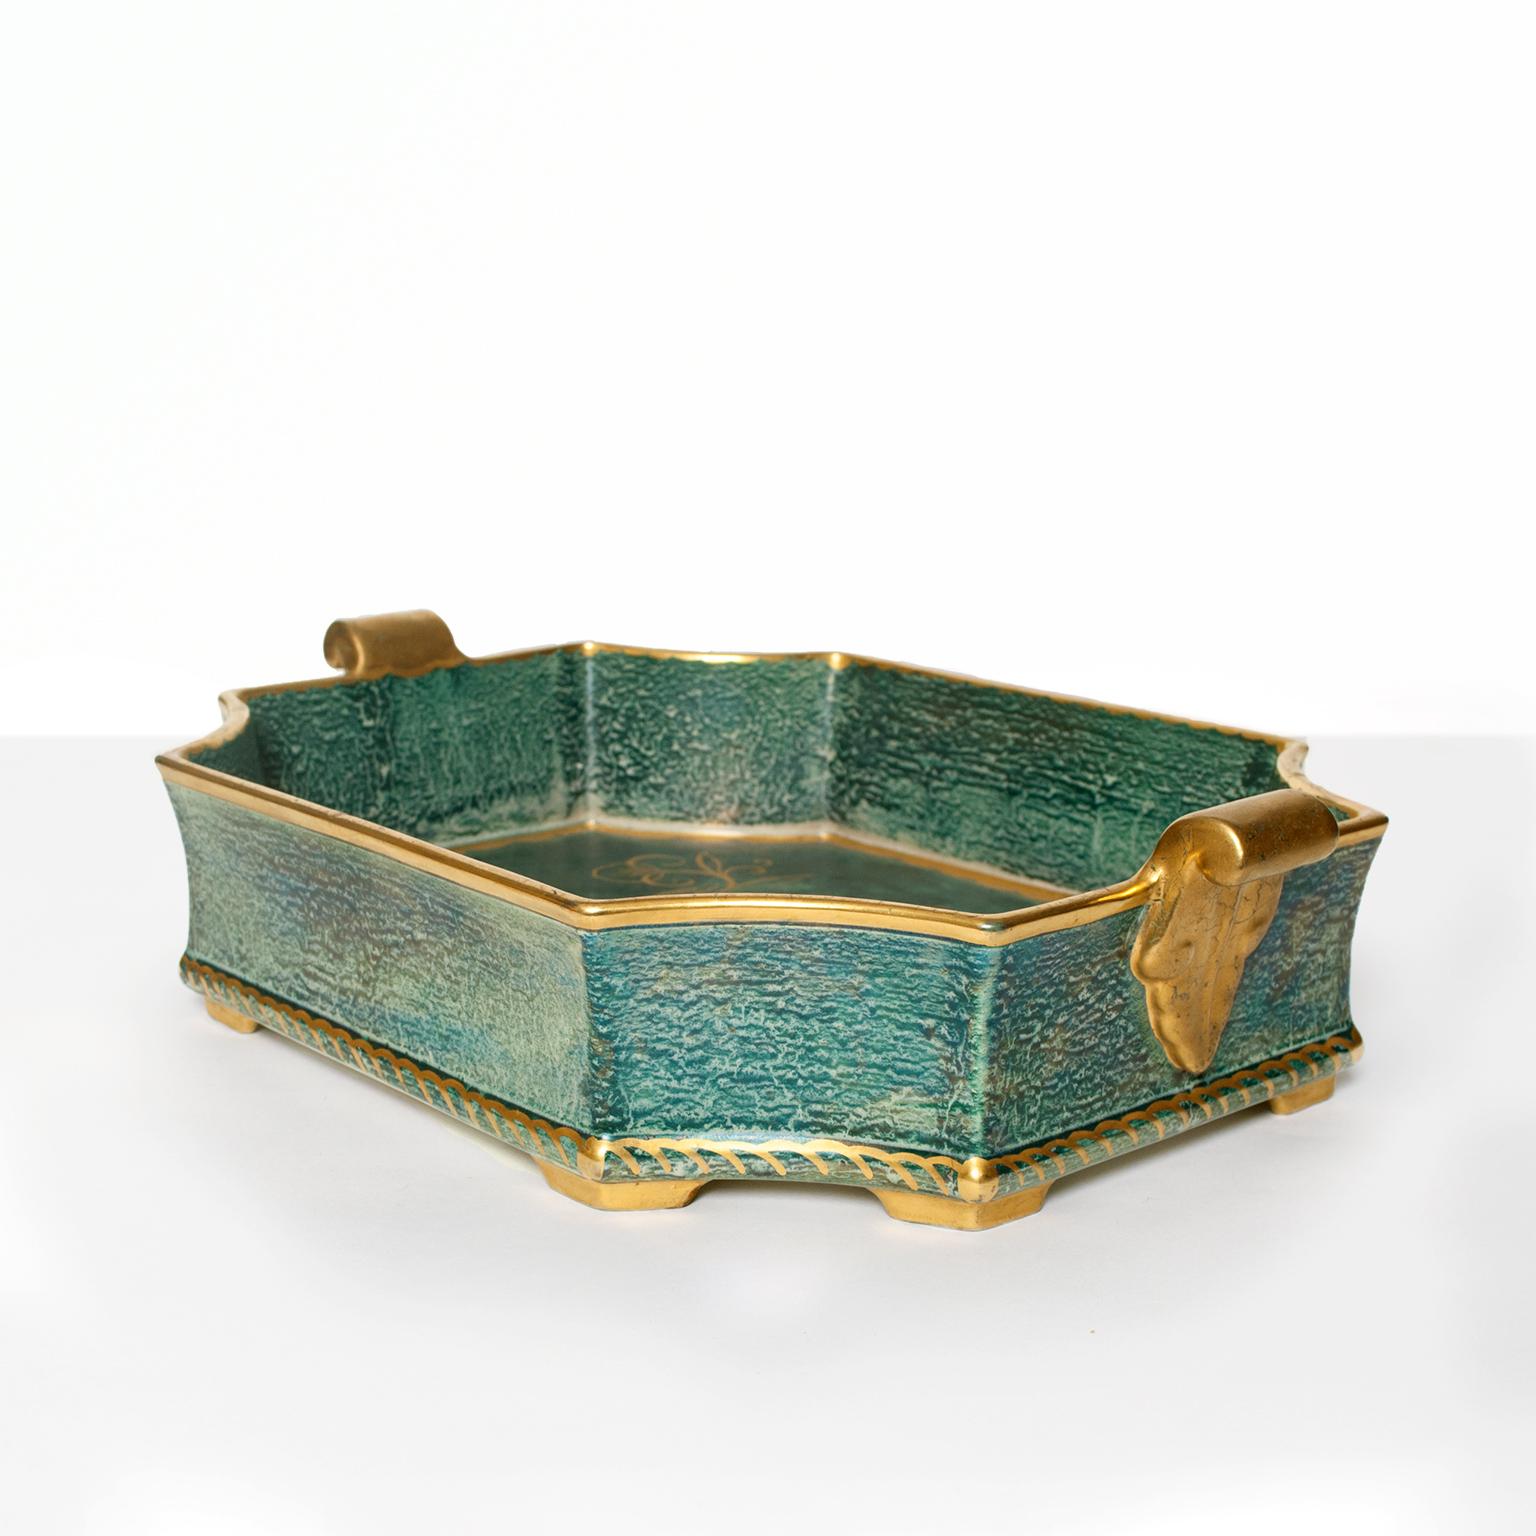 Swedish Art Deco Tray / Bowl by Josef Ekberg, Gustavsberg (Schwedisch)